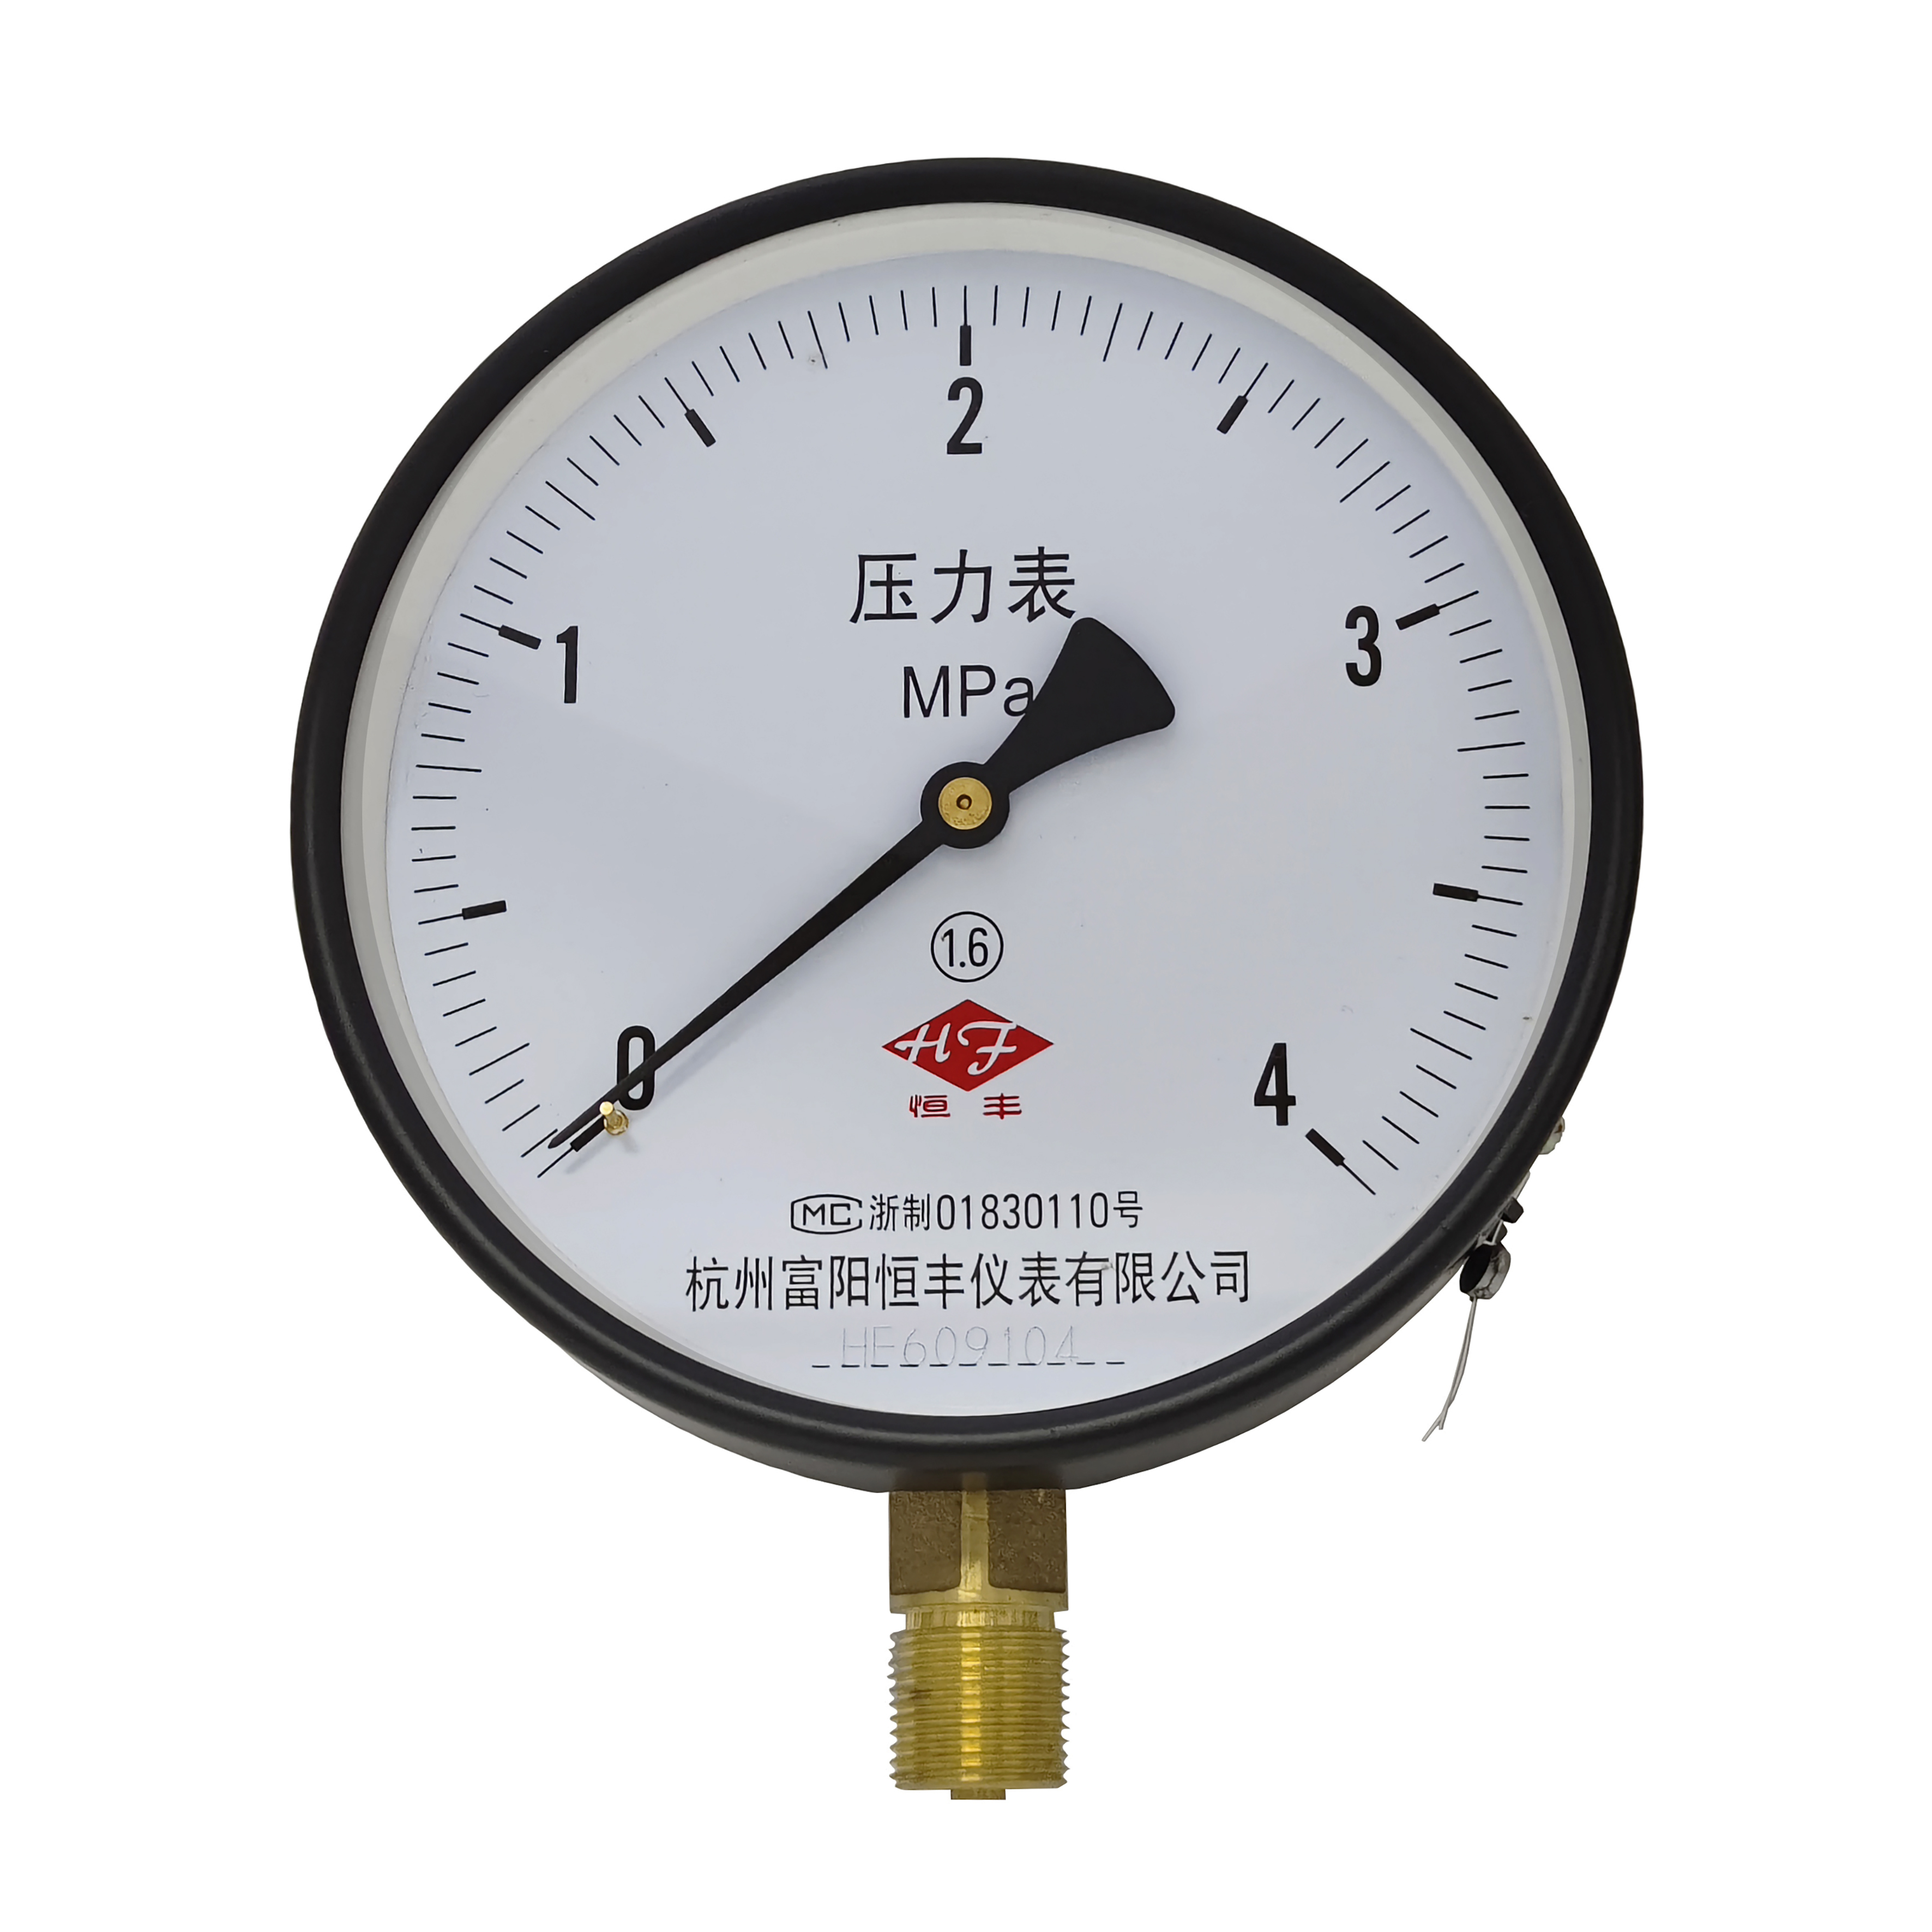 Y150 ordinary pressure gauge